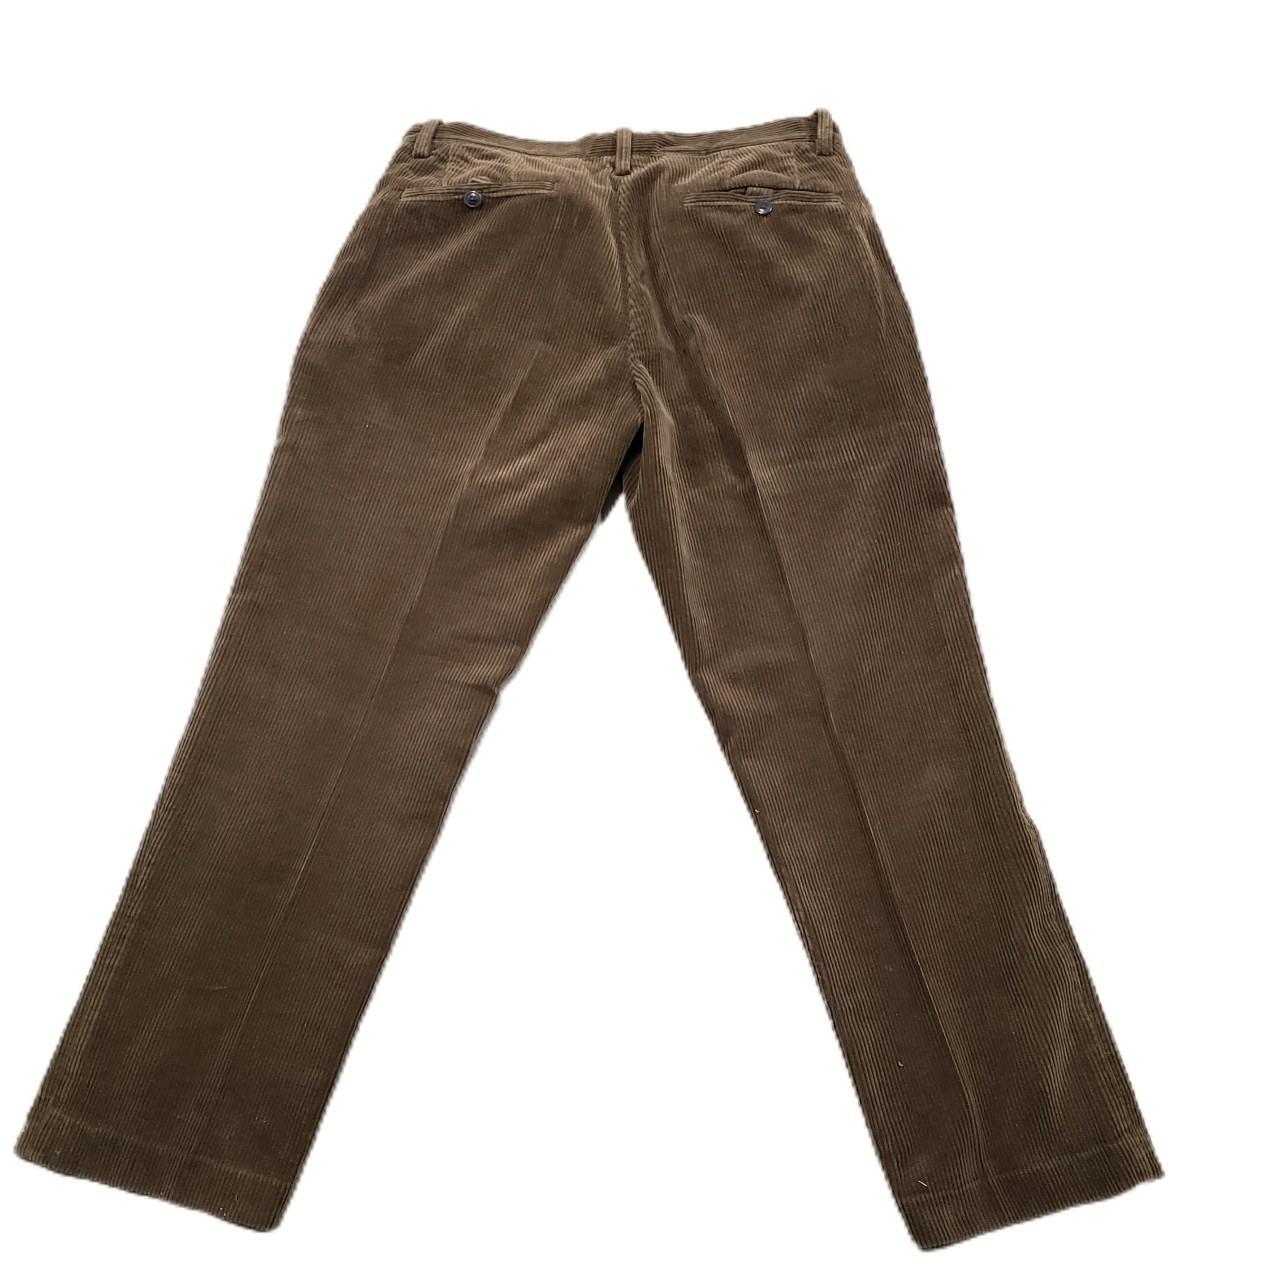 Men's Pendleton Corduroy Pants Size: 32X32... - Depop